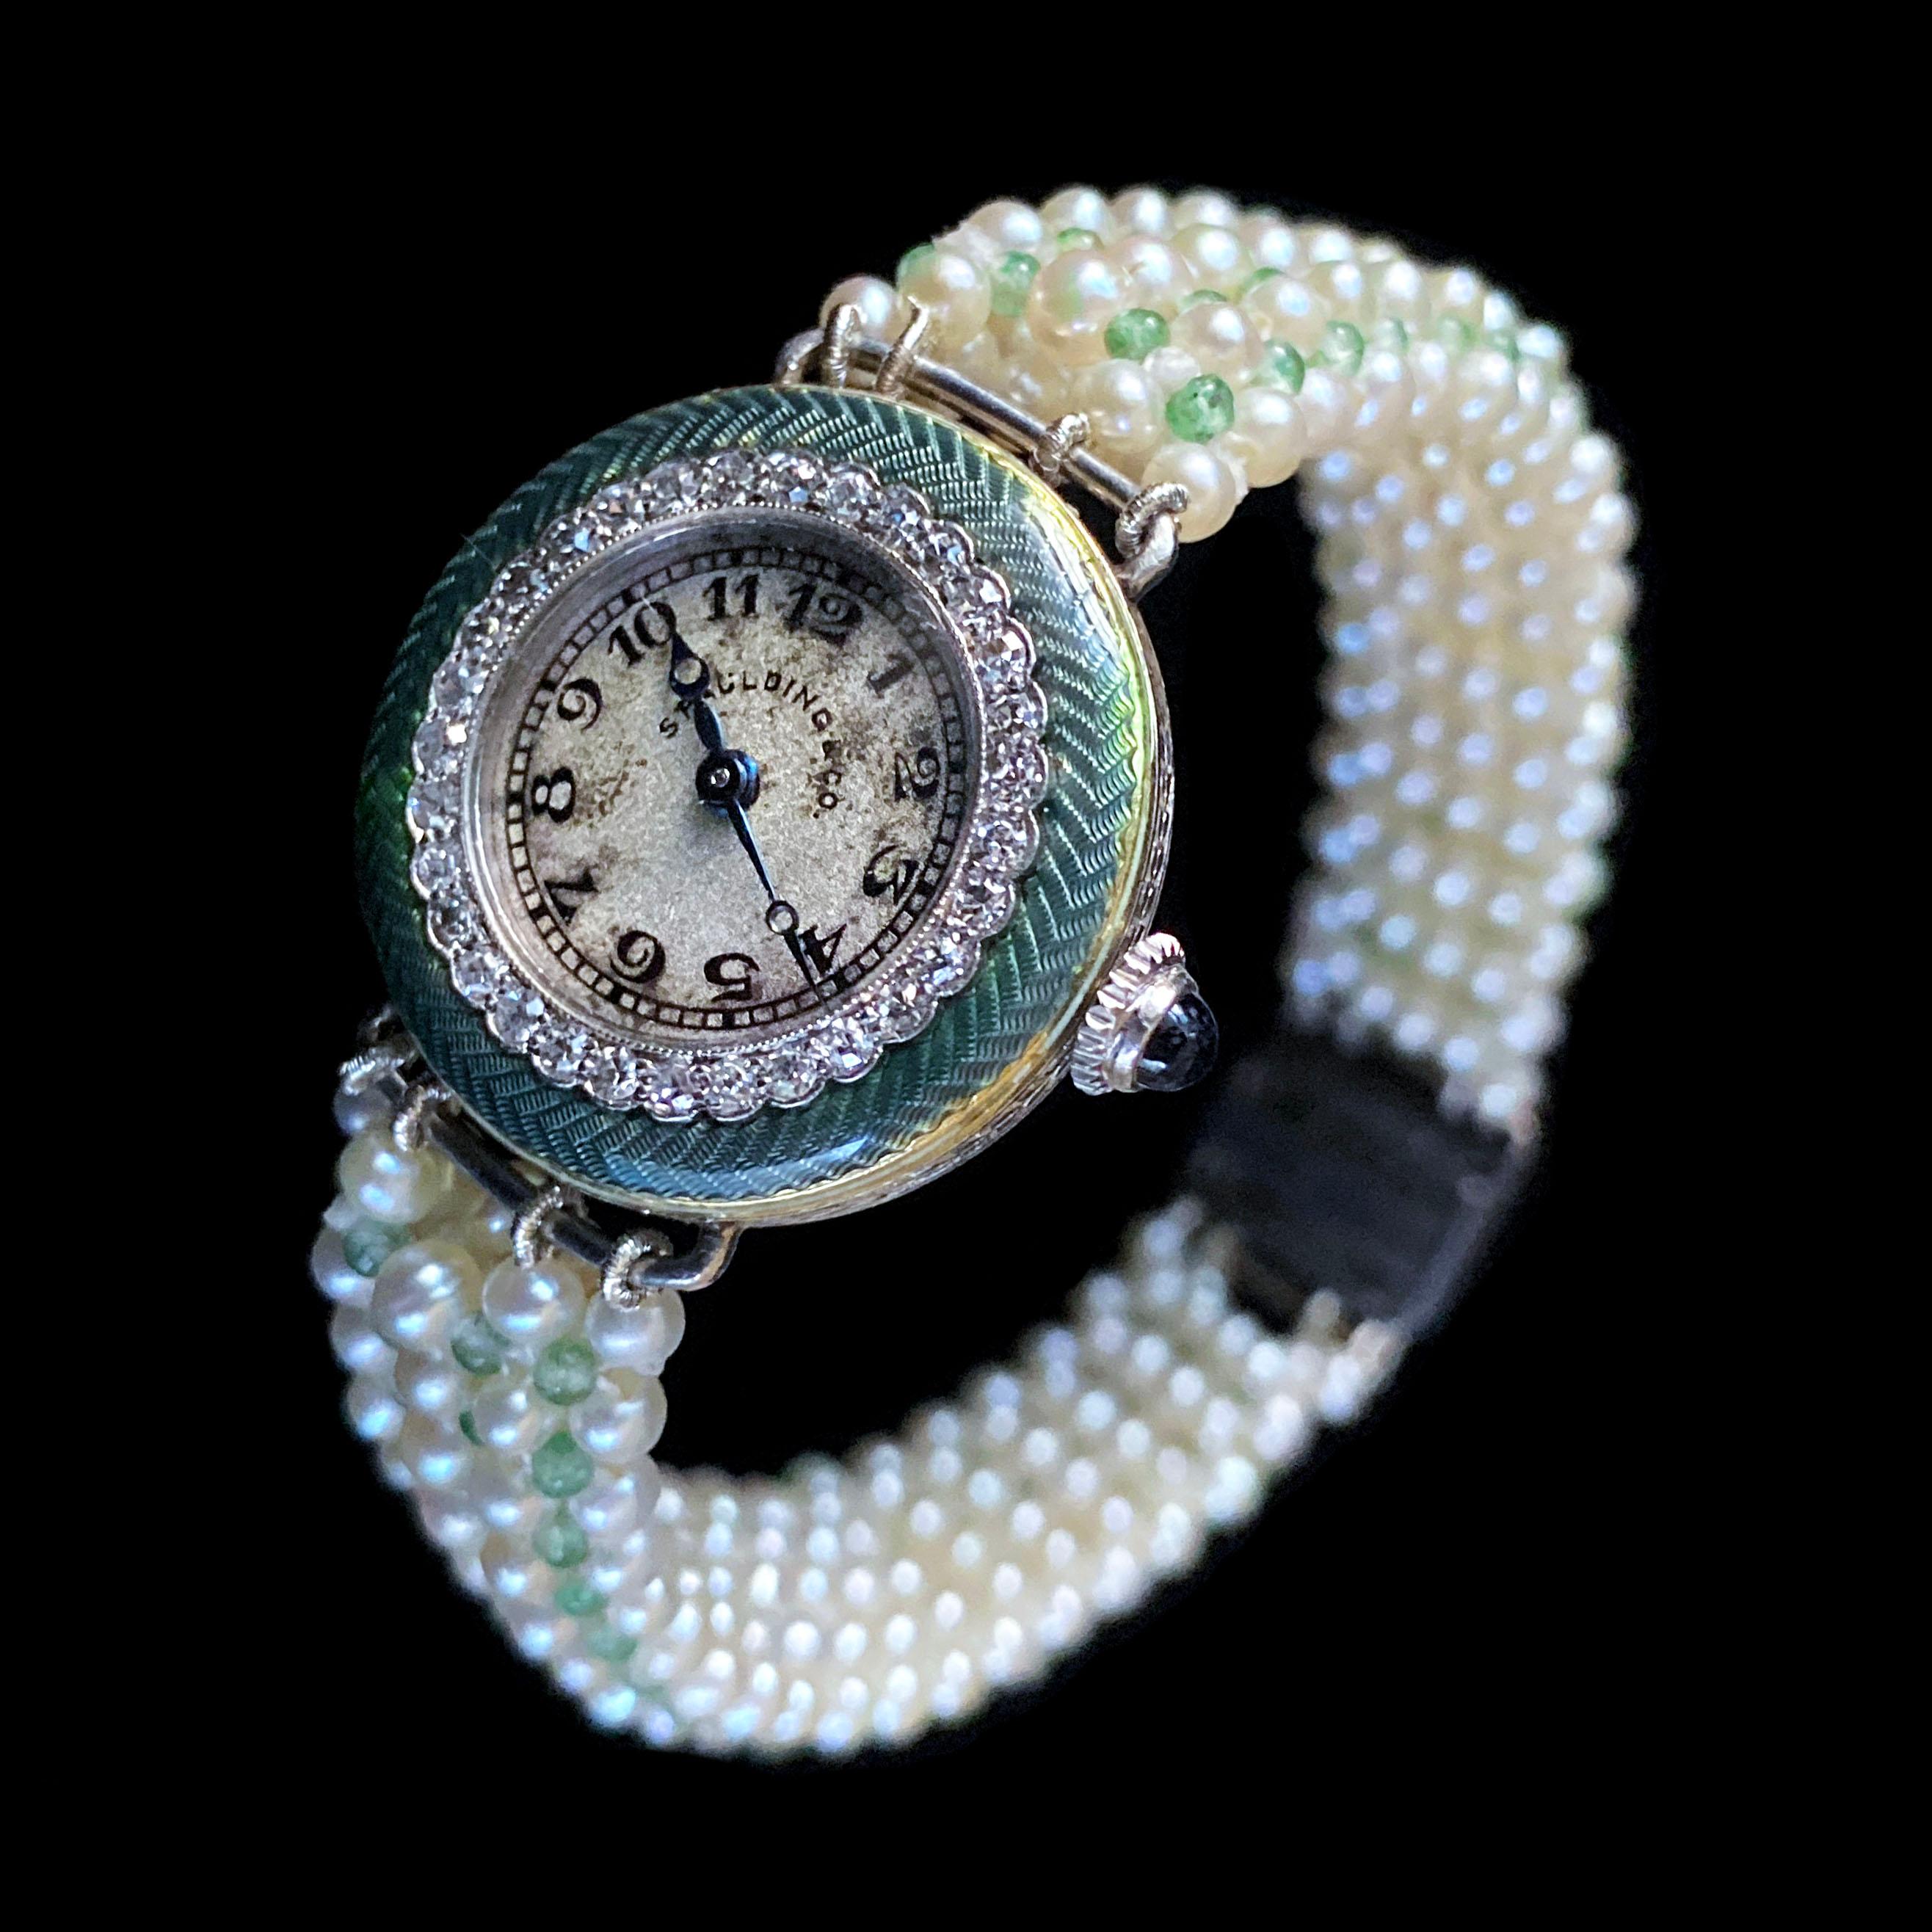 novelle quartz watch